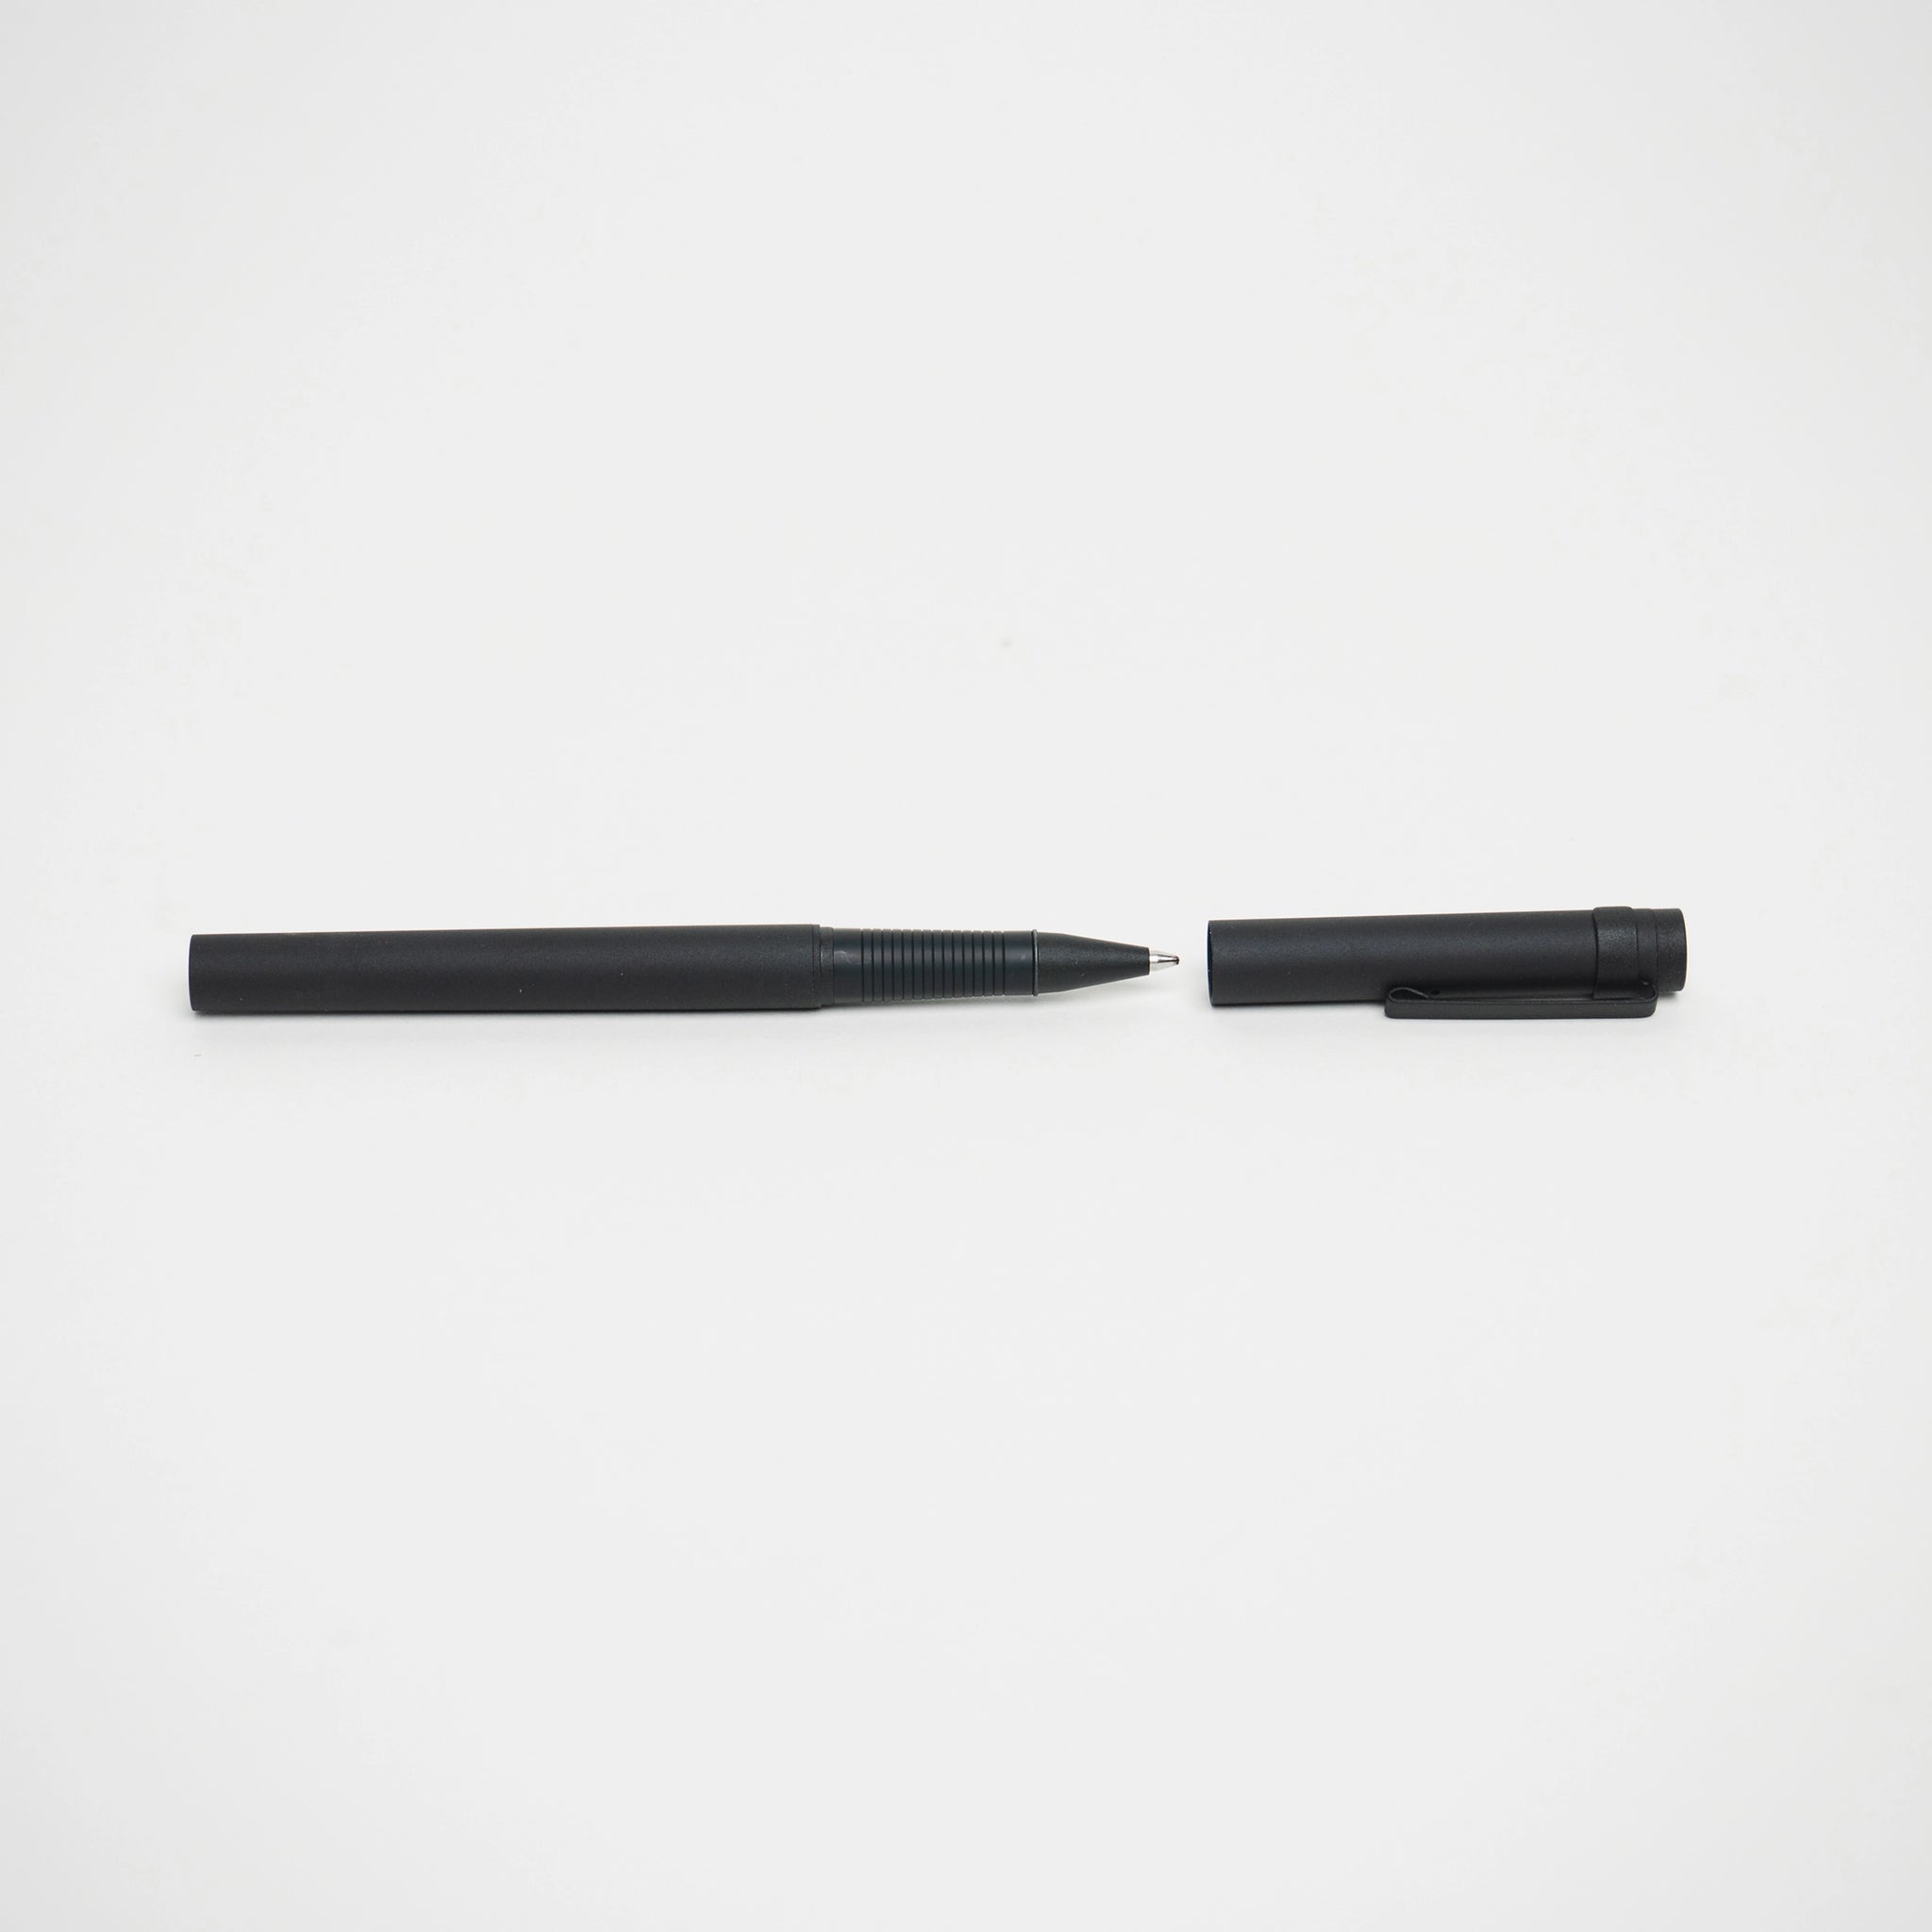 Aluminum Pen in Ballpoint Pen